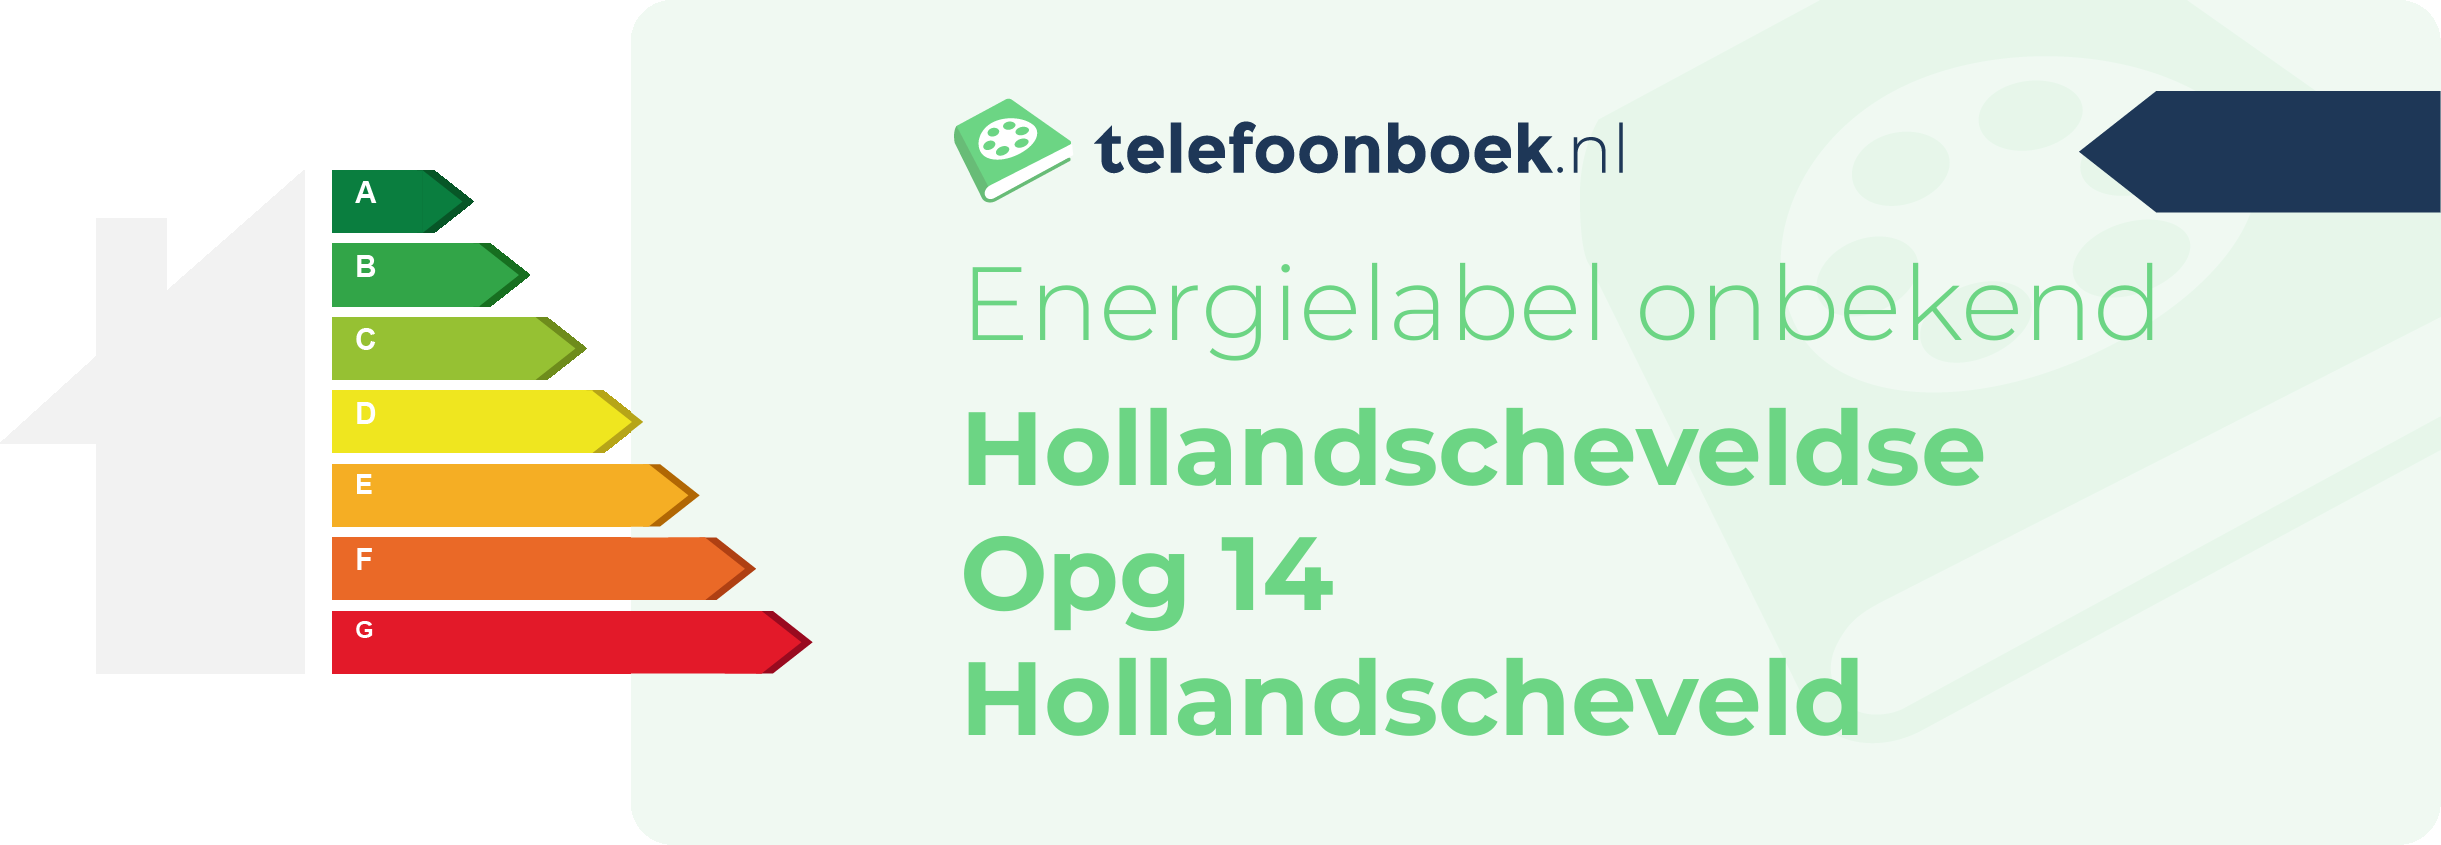 Energielabel Hollandscheveldse Opg 14 Hollandscheveld